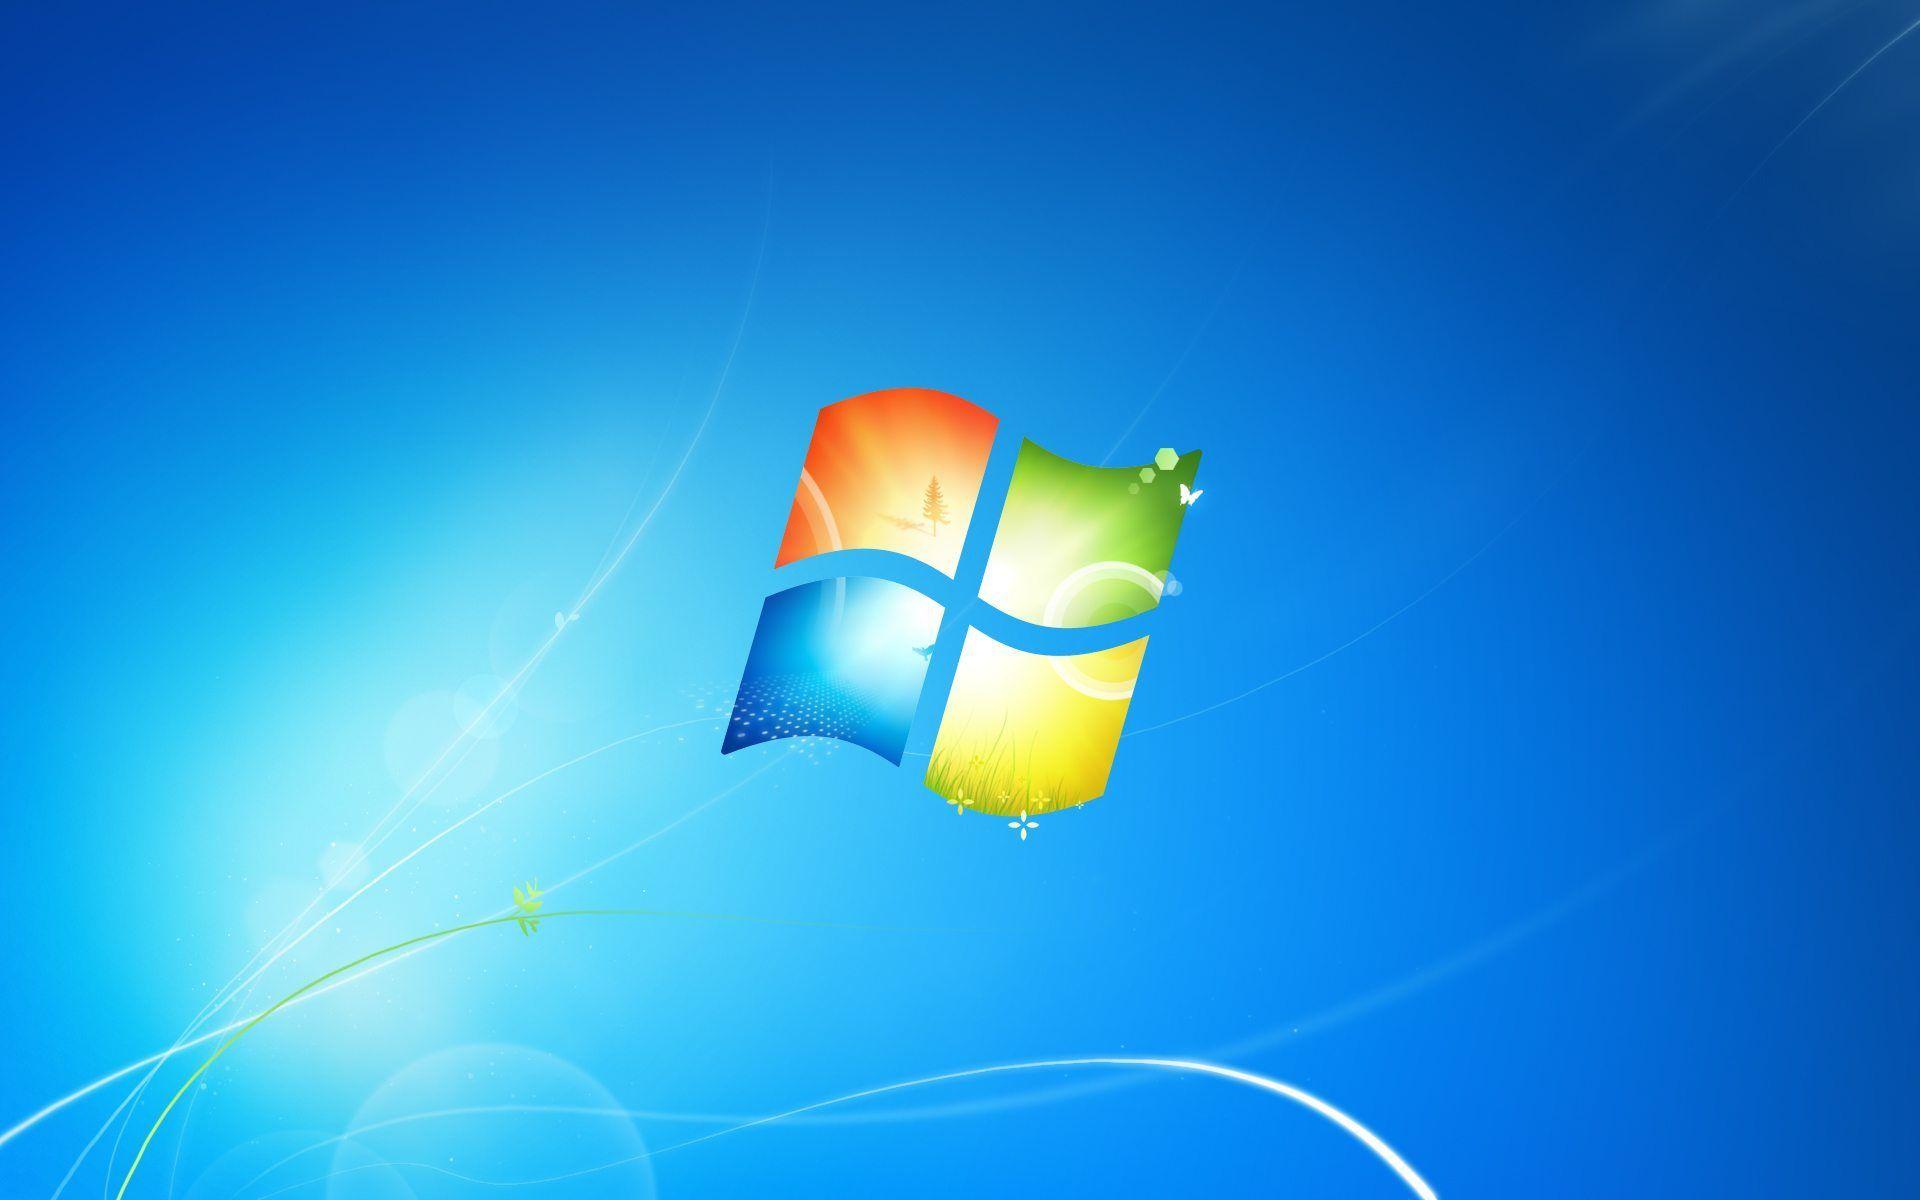 Hình nền Windows 7 sẽ mang đến cho bạn sự đa dạng và tùy biến giao diện tuyệt vời. Hãy khám phá các hình nền độc đáo và đẹp mắt để thay đổi không gian làm việc của bạn và tạo ra trải nghiệm thú vị.